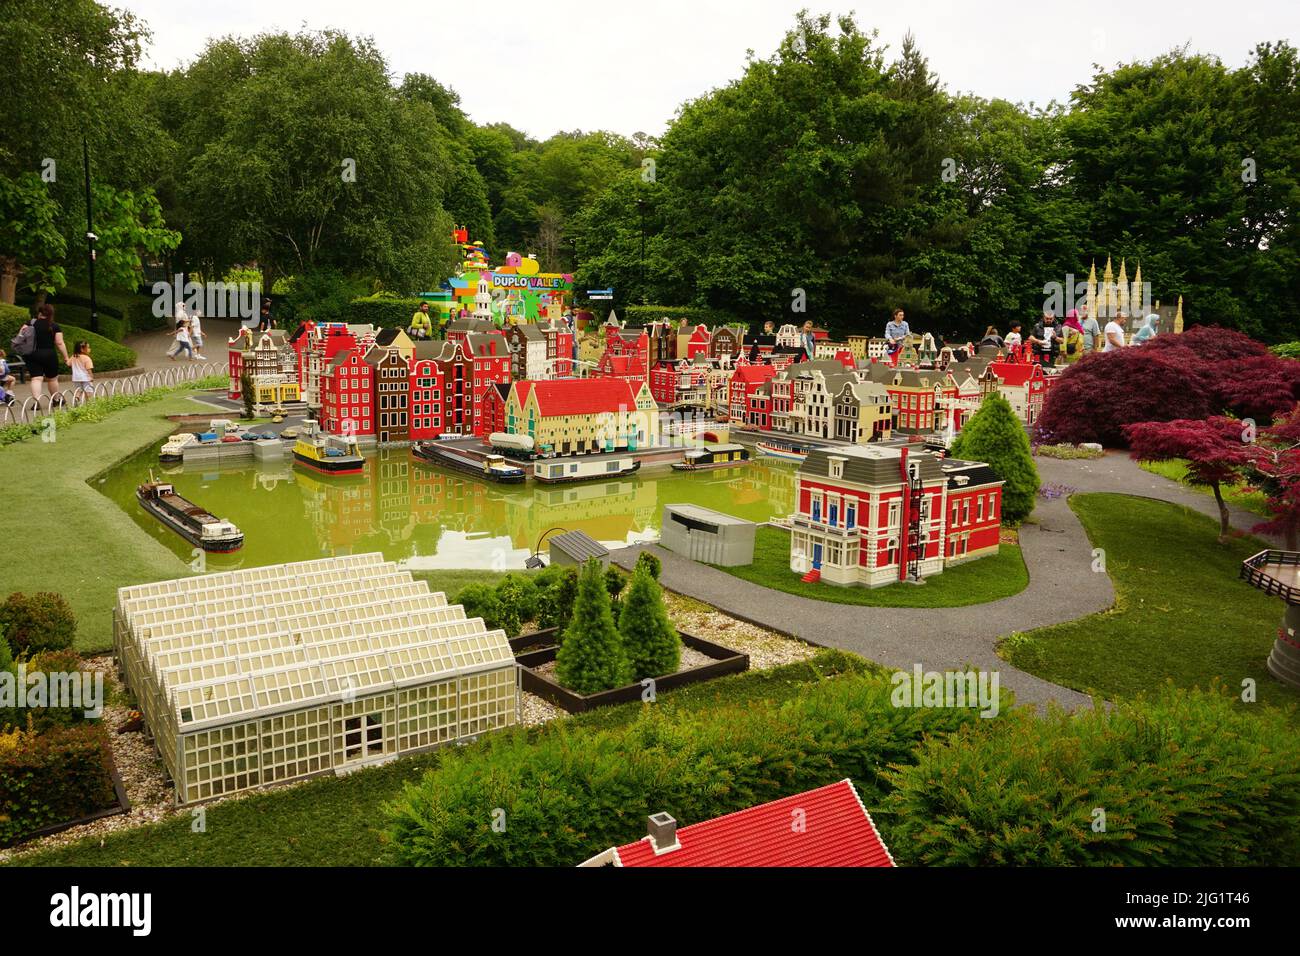 LEGOLAND Windsor theme park, London, United Kingdom Stock Photo